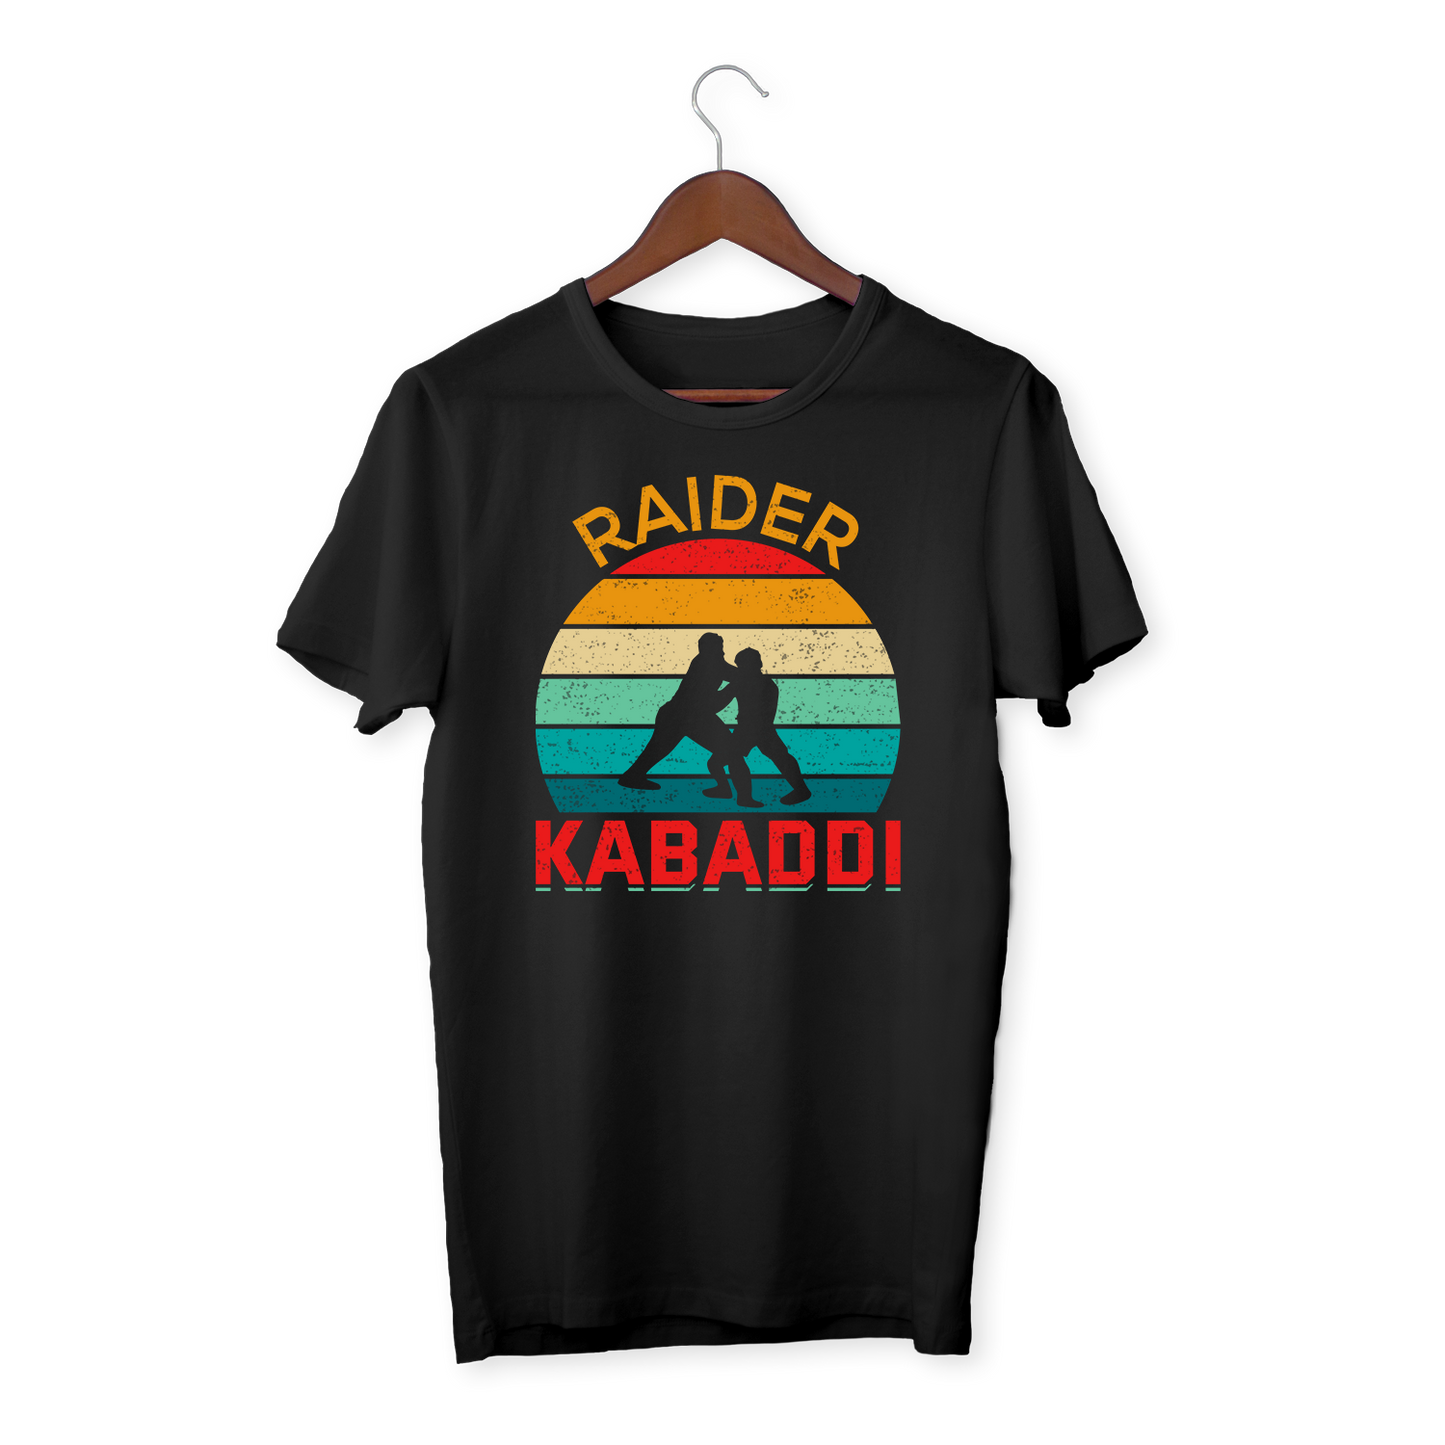 Kabaddi - Unisex organic cotton t-shirt